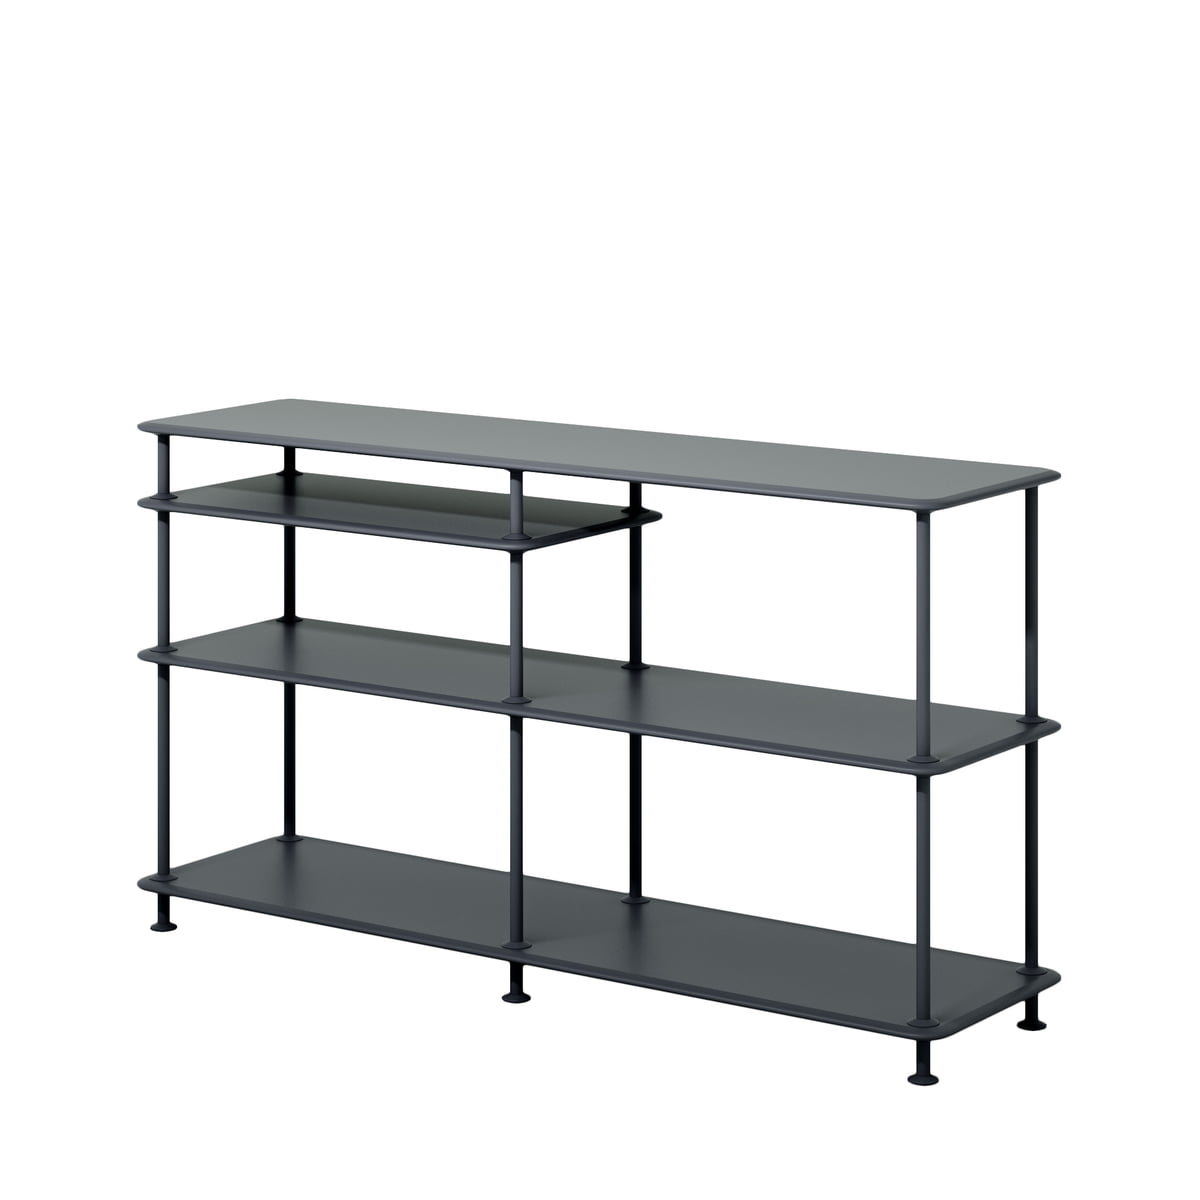 Montana - Free shelf system 75,8 x 138,4 cm | Connox